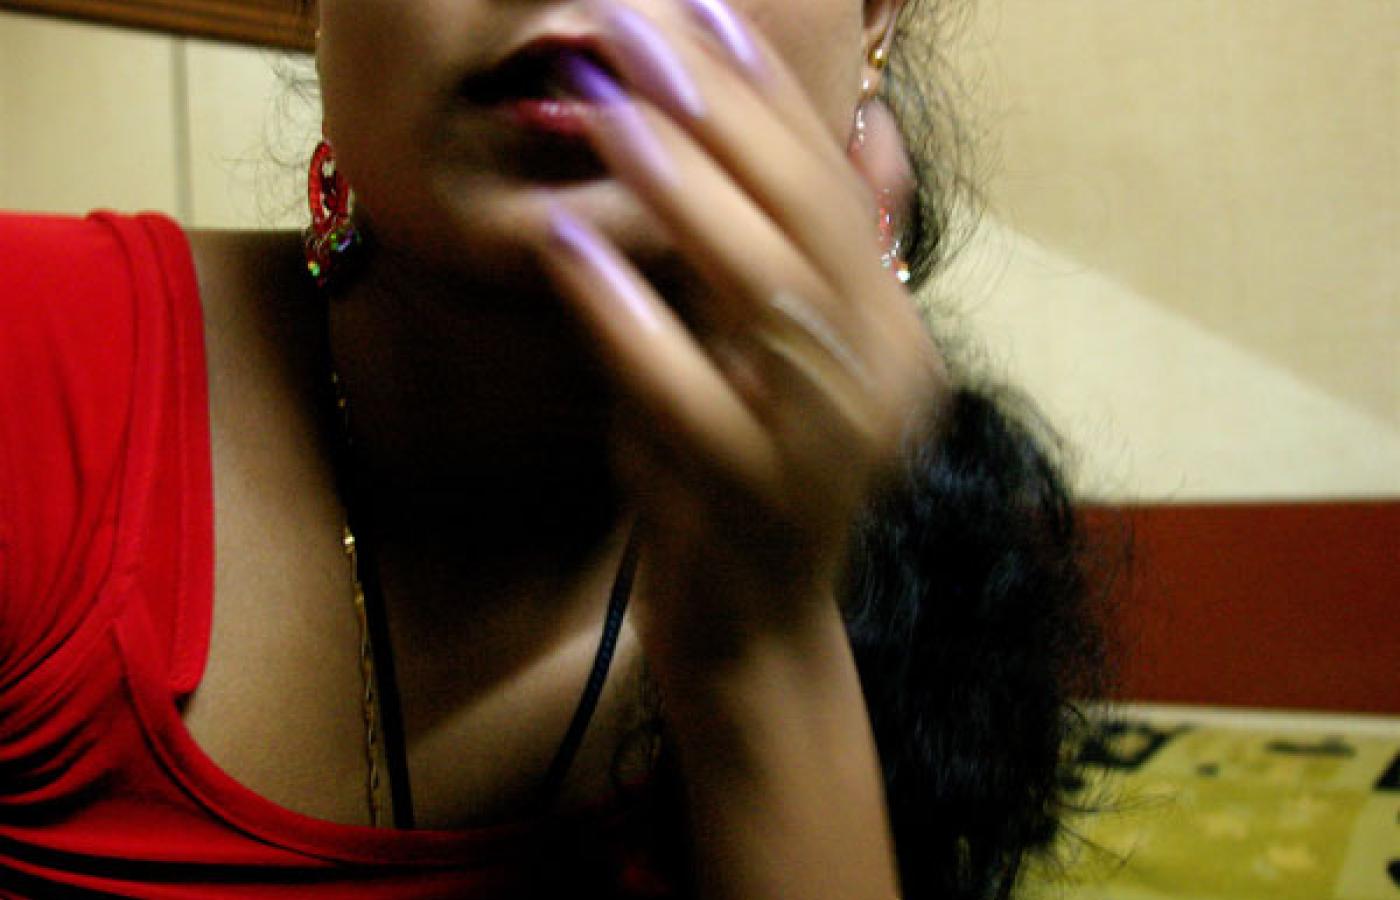 Zwykła prostytucja jest oddalona o całe światy od ekskluzywnej obsługi towarzyskiej, nawet jeśli ostatecznie chodzi o to samo: o seks za pieniądze. Fot. Capitan Giona, Flickr, CC by SA